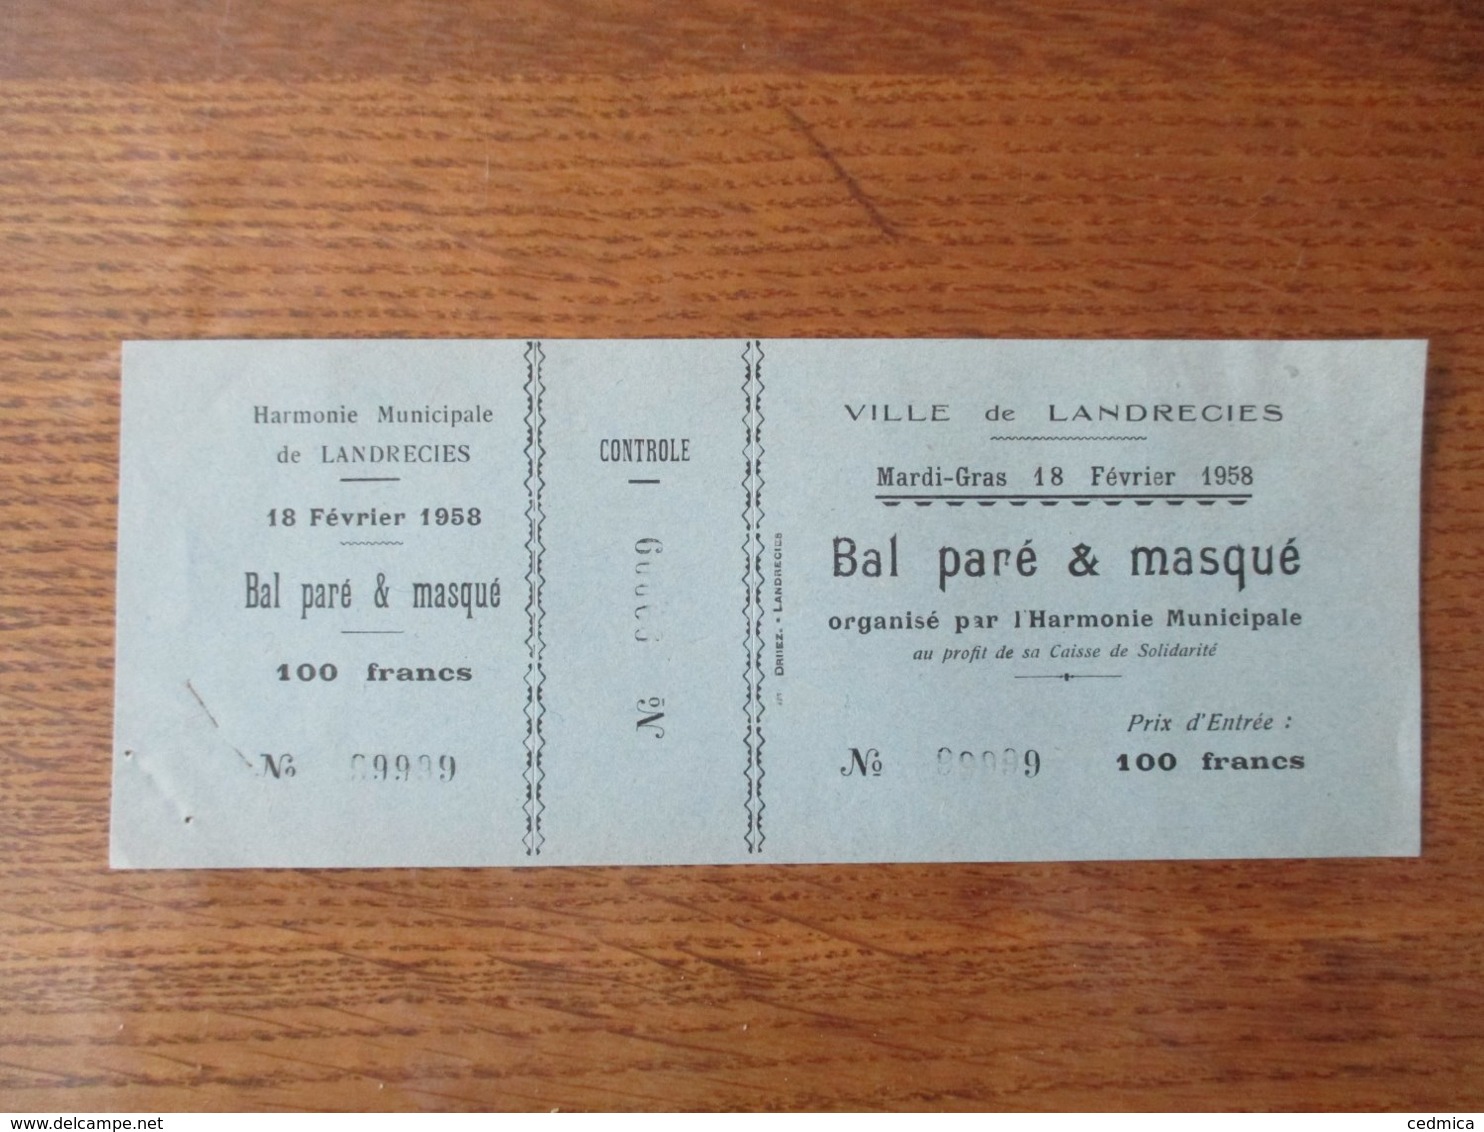 VILLE DE LANDRECIES MARDI-GRAS 18 FEVRIER 1958 BAL PARE & MASQUE ORGANISE PAR L'HARMONIE MUNICIPALE - Tickets D'entrée